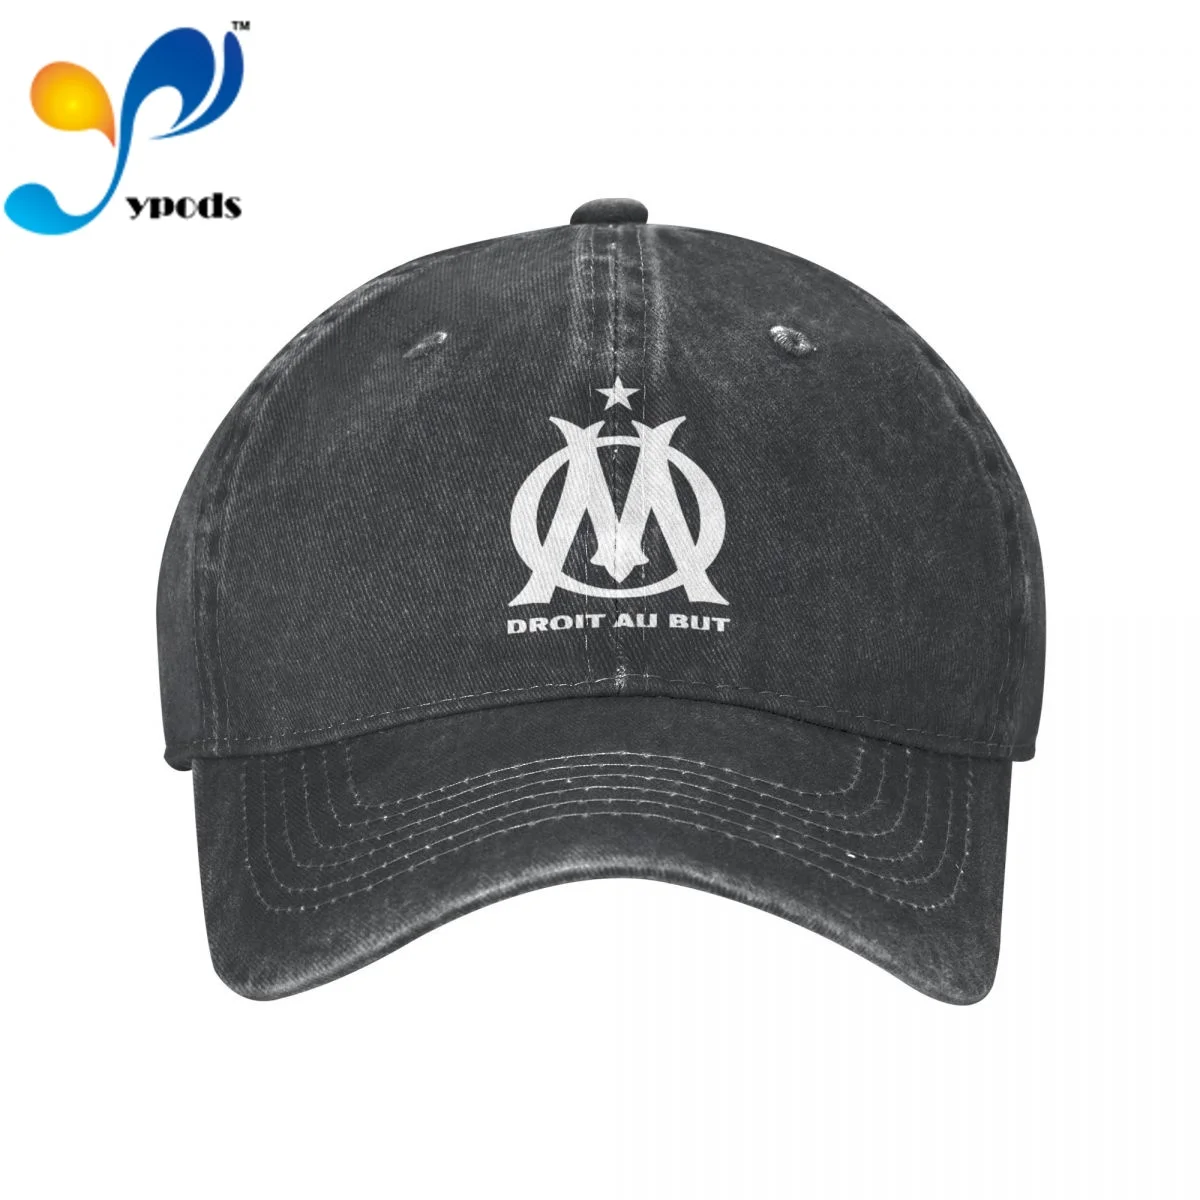 

DROIT AU BUT Marseille Cotton Cap For Men Women Gorras Snapback Caps Baseball Caps Casquette Dad Hat